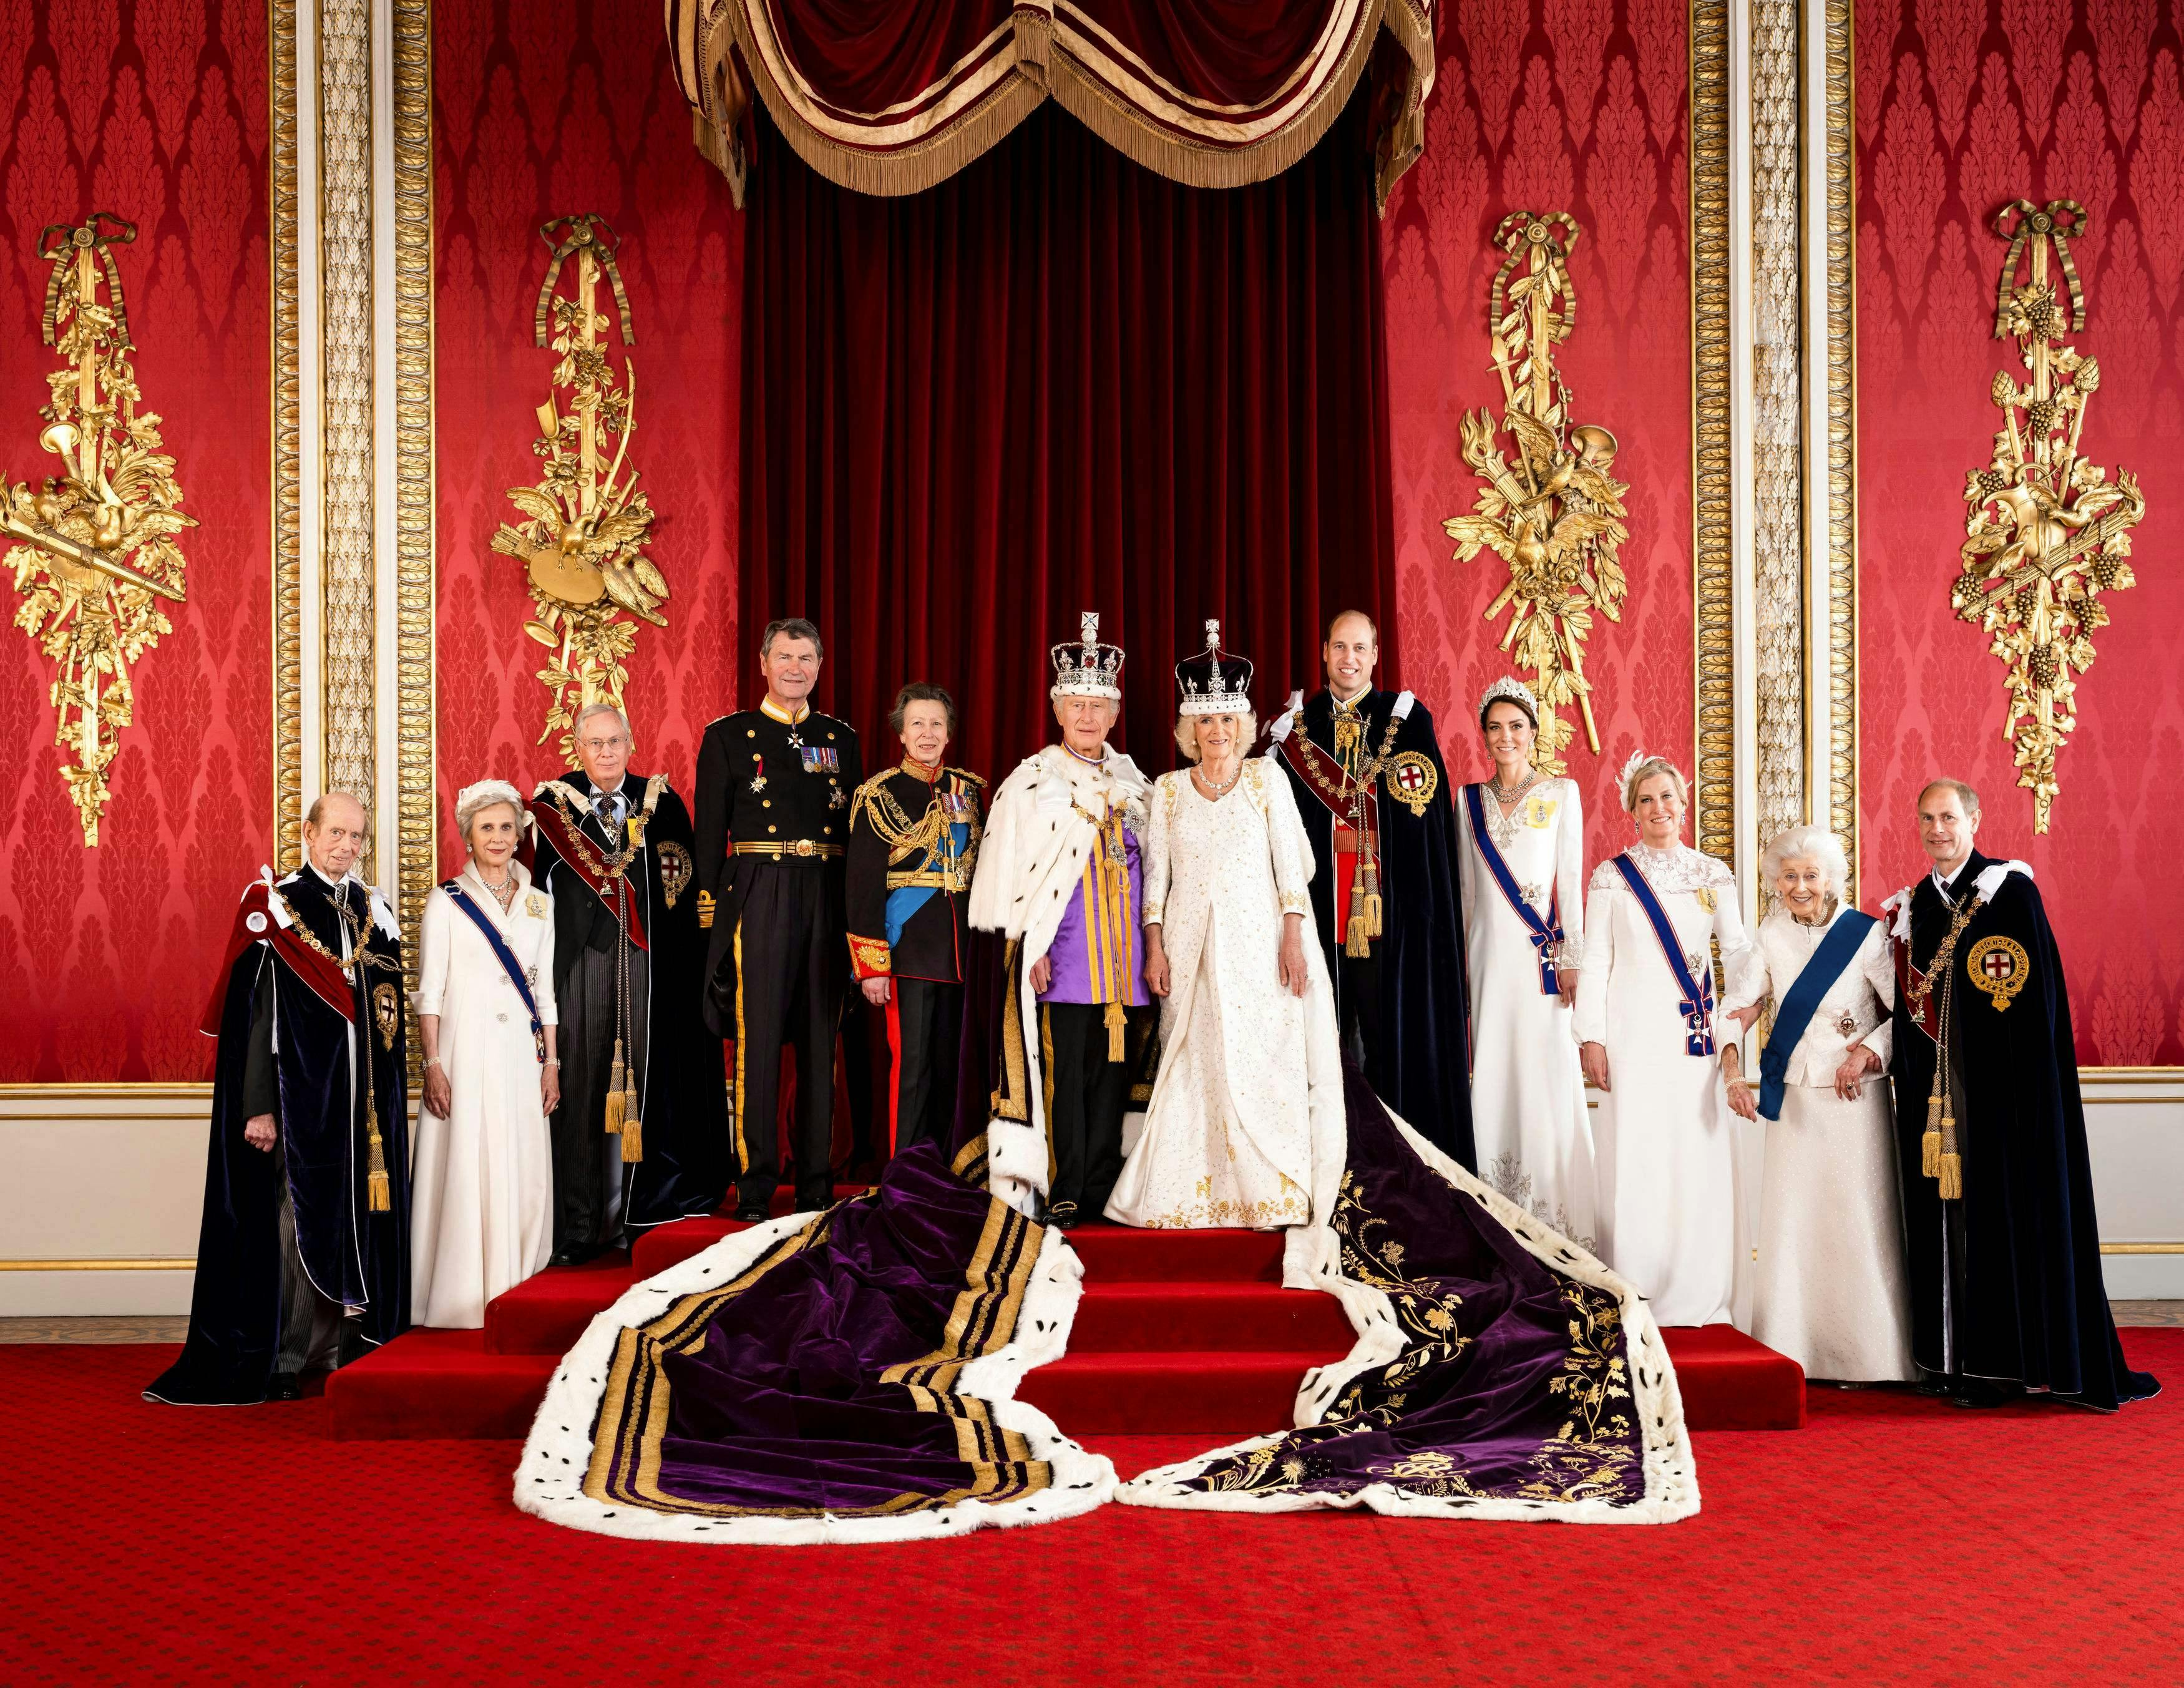 Fra venstre: Hertugen af Kent, hertuginden af Gloucester, hertugen af Gloucester, Sir Tim Laurence, prinsesse Anne, kong Charles, dronning Camilla, prins William, prinsesse Kate, hertuginde Sophie, prinsesse Alexandra og prins Edward.
